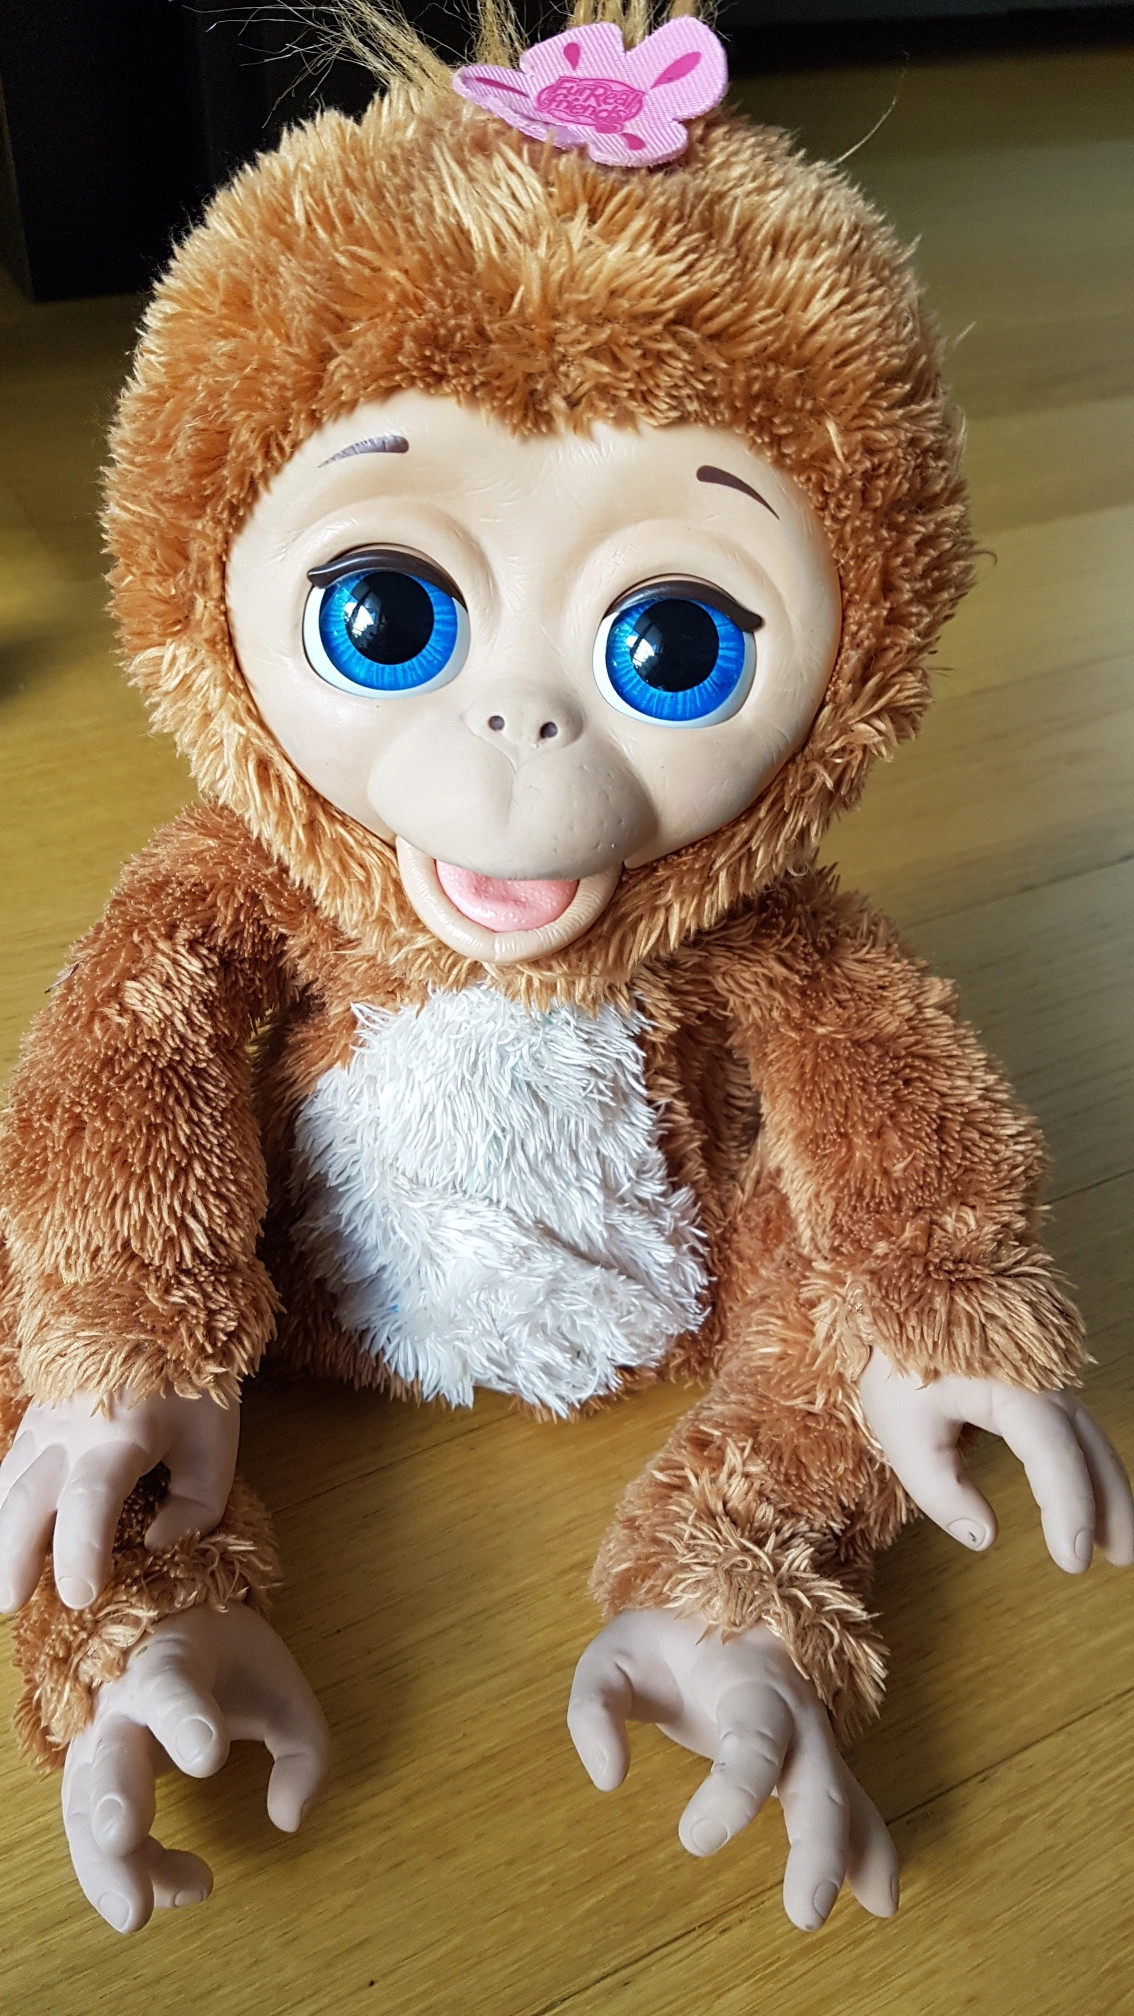 Le singe Fur Real - Testinaute@Home, On avait dit plus de bébé à la maison  mais on a craqué #furrealfriends #singe #monkey #jouet #commeunbébé, By  Testinaute